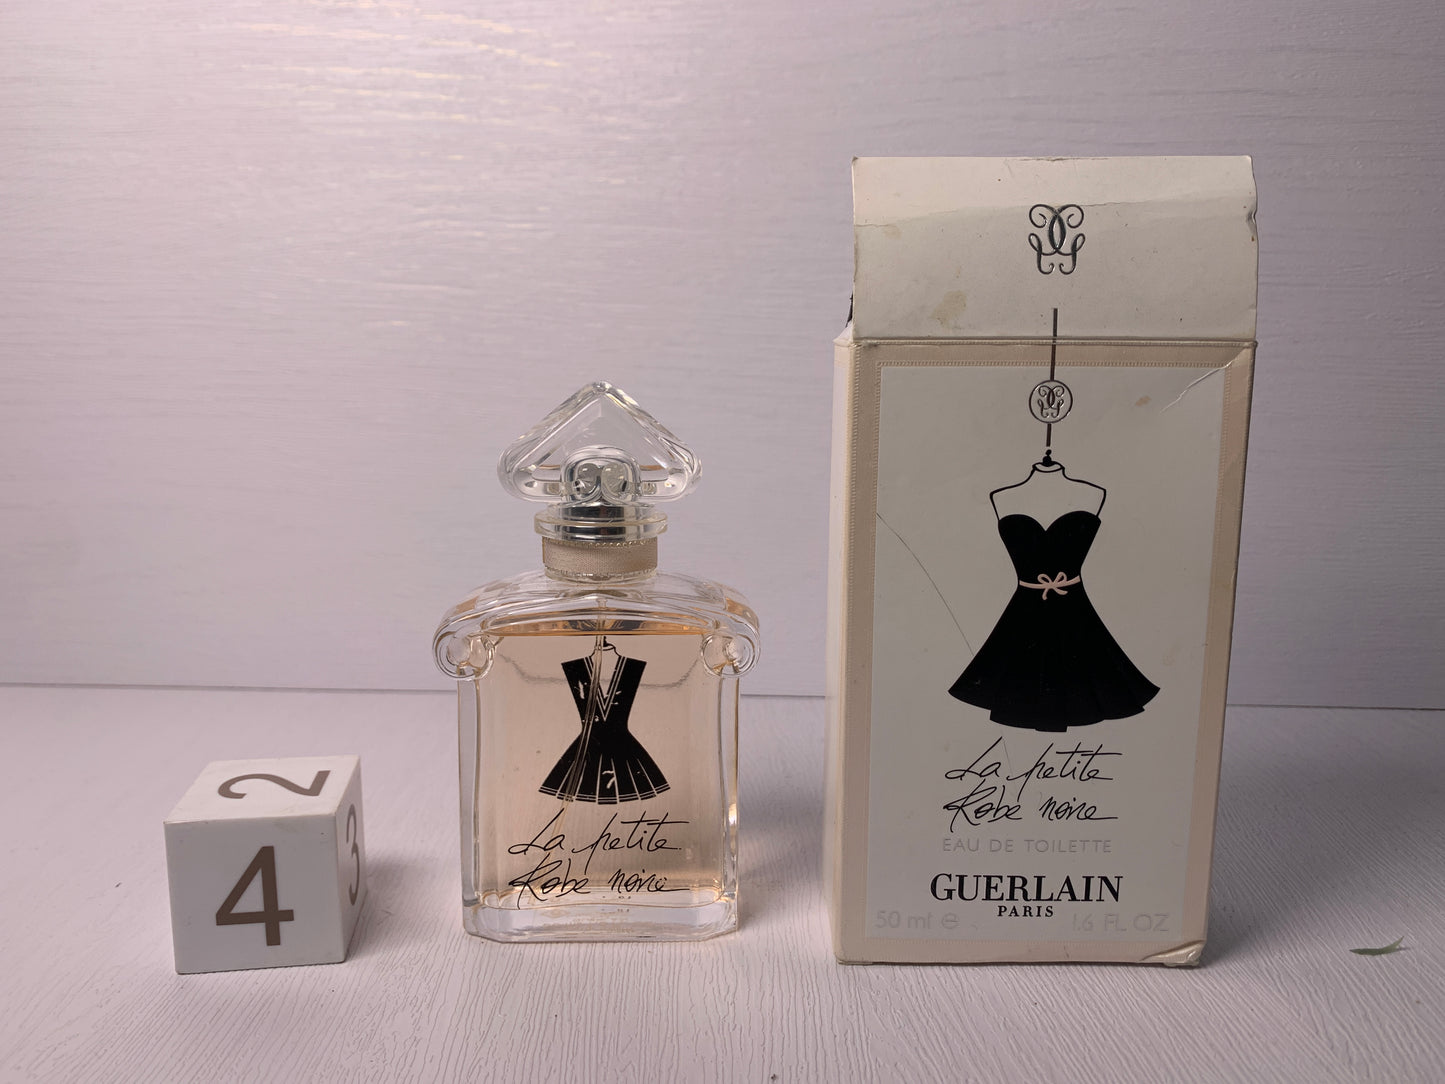 Auth Guerlain Mitsouko parfum 8ml Eau de cologne 30ml 50ml EDT  - 9JAN22